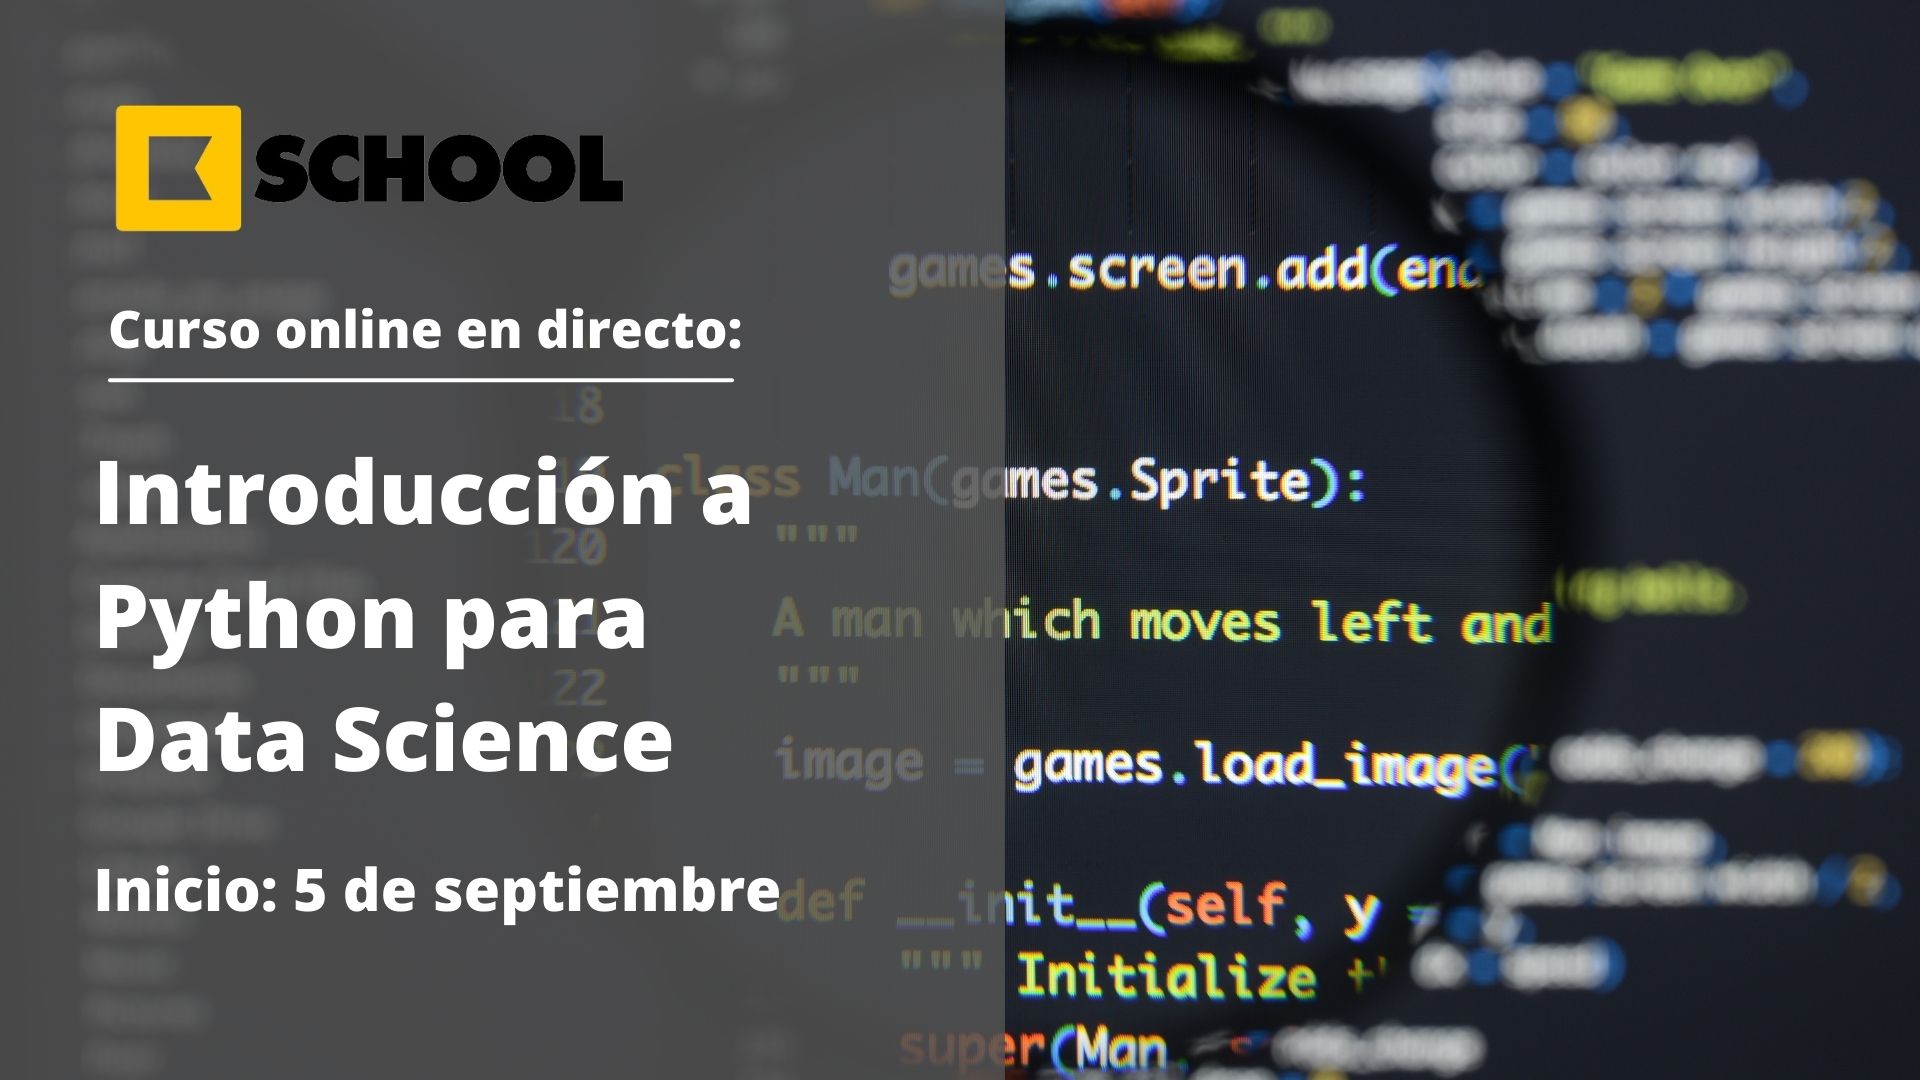 Curso Introducción a Python para Data Science, KSchool, Cámara de Comercio de Murcia